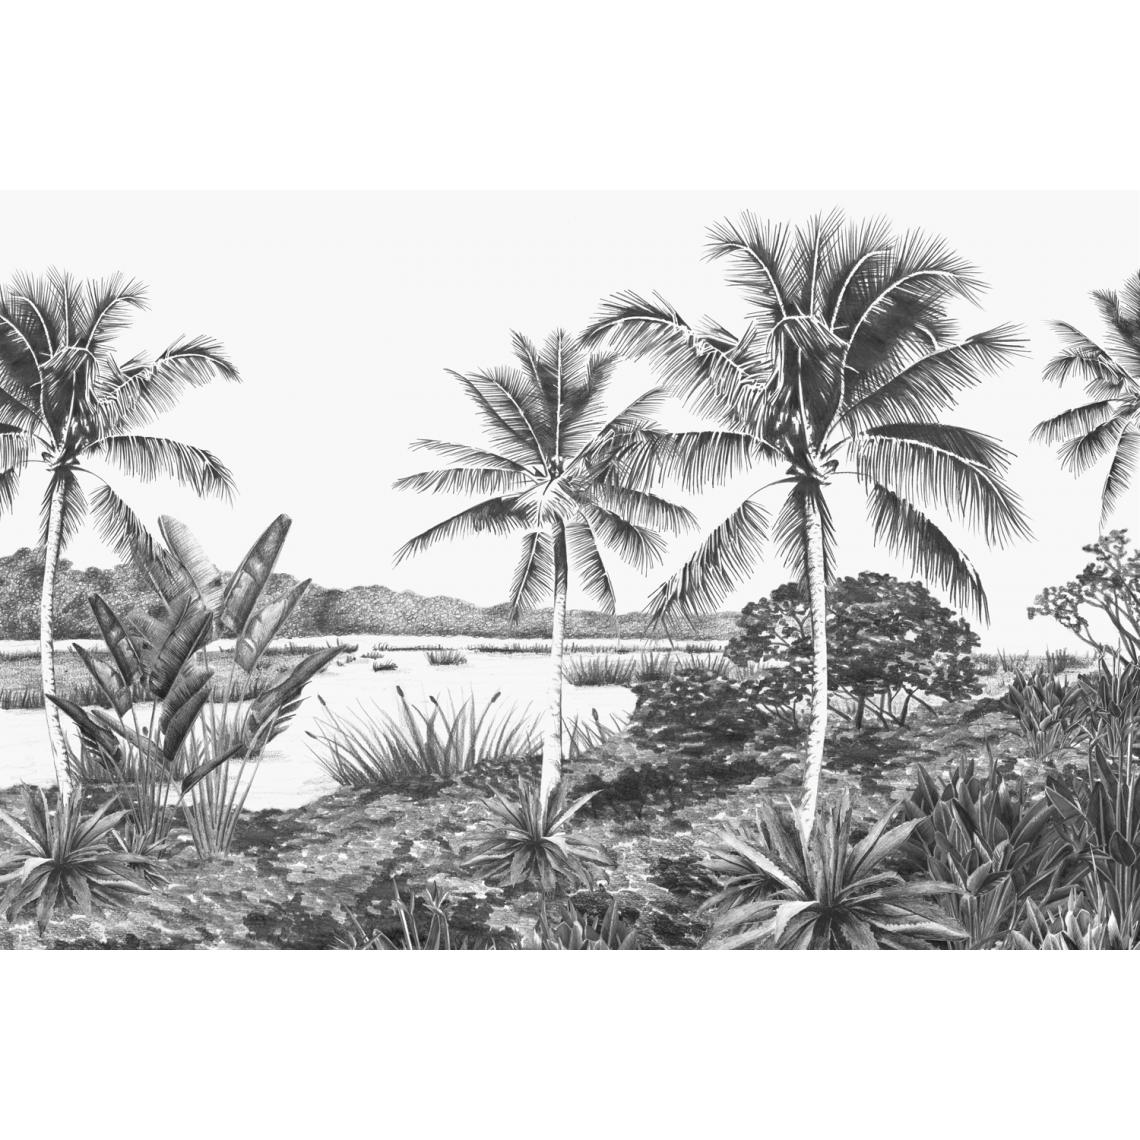 Origin - Origin papier peint panoramique paysage avec des palmiers noir et blanc - 357224 - 4.185 x 2.79 m - Papier peint